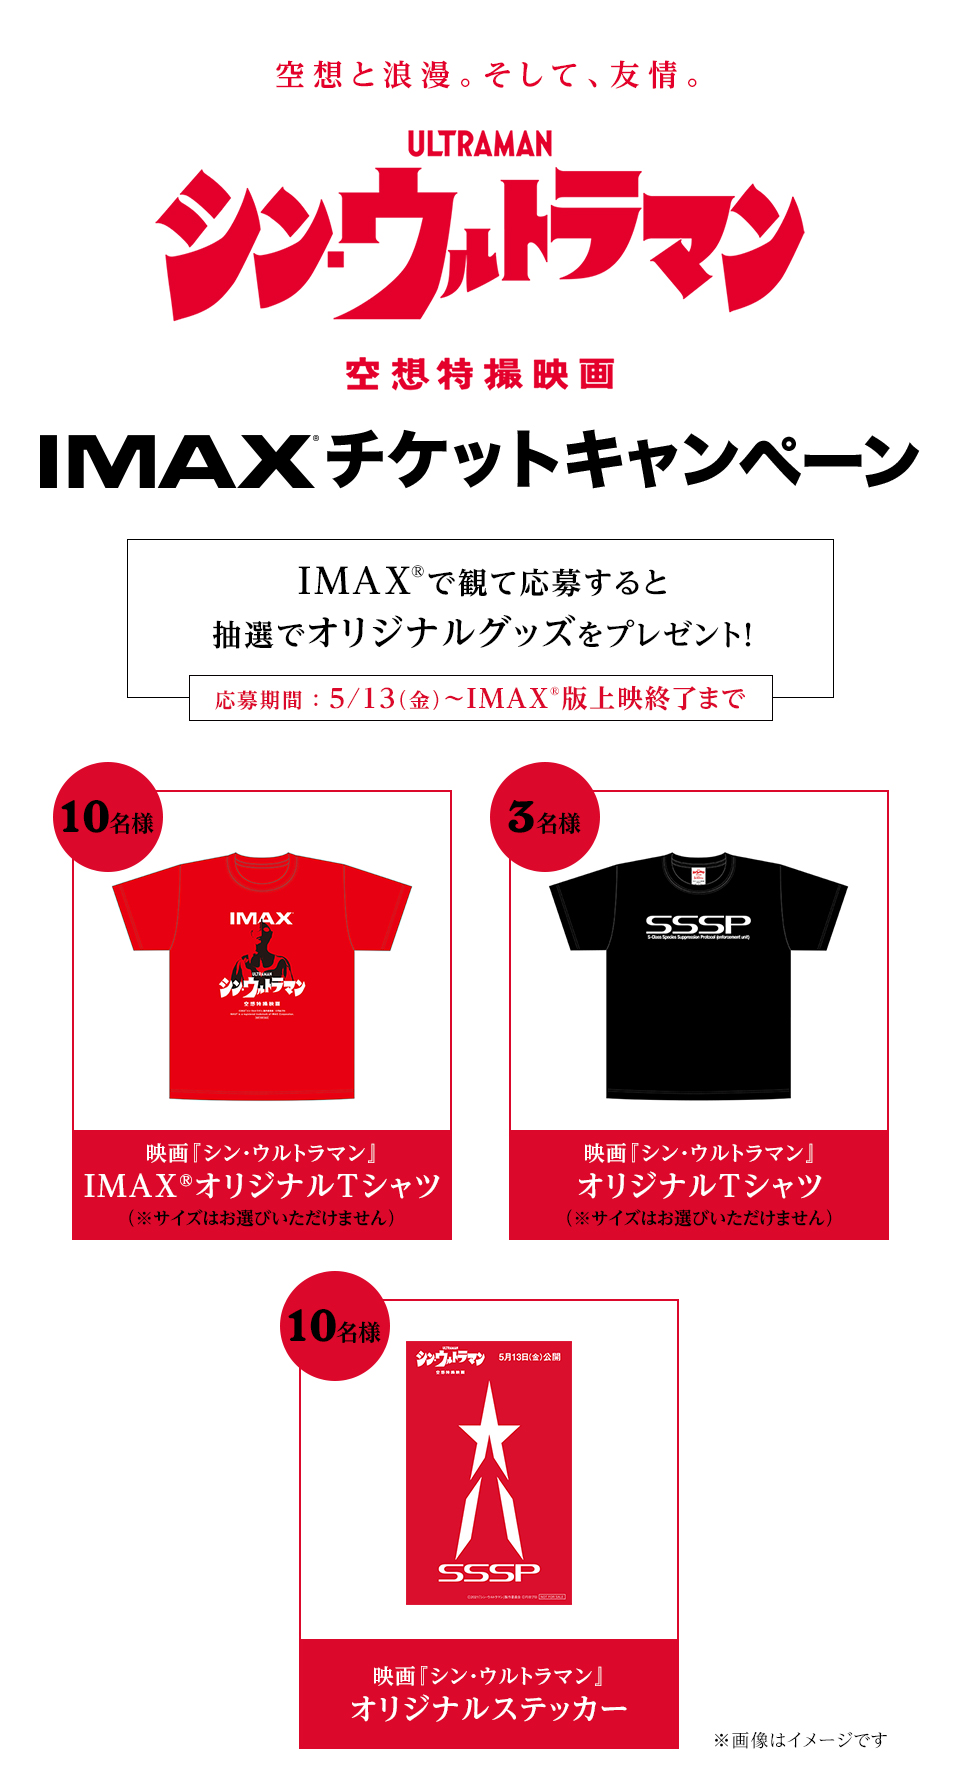 空想と浪漫。そして、友情。『シン・ウルトラマン』IMAXチケットキャンペーン　IMAX®で観て応募すると抽選でオリジナルグッズをプレゼント！　応募期間：5/13（金）～IMAX版上映終了まで　賞品1：映画『シン・ウルトラマン』IMAX® オリジナルTシャツ（※サイズはお選びいただけません）　１０名様　賞品2：映画『シン・ウルトラマン』オリジナルTシャツ（サイズはお選びいただけません）　賞品3：映画『シン・ウルトラマン』オリジナルステッカー　１０名様